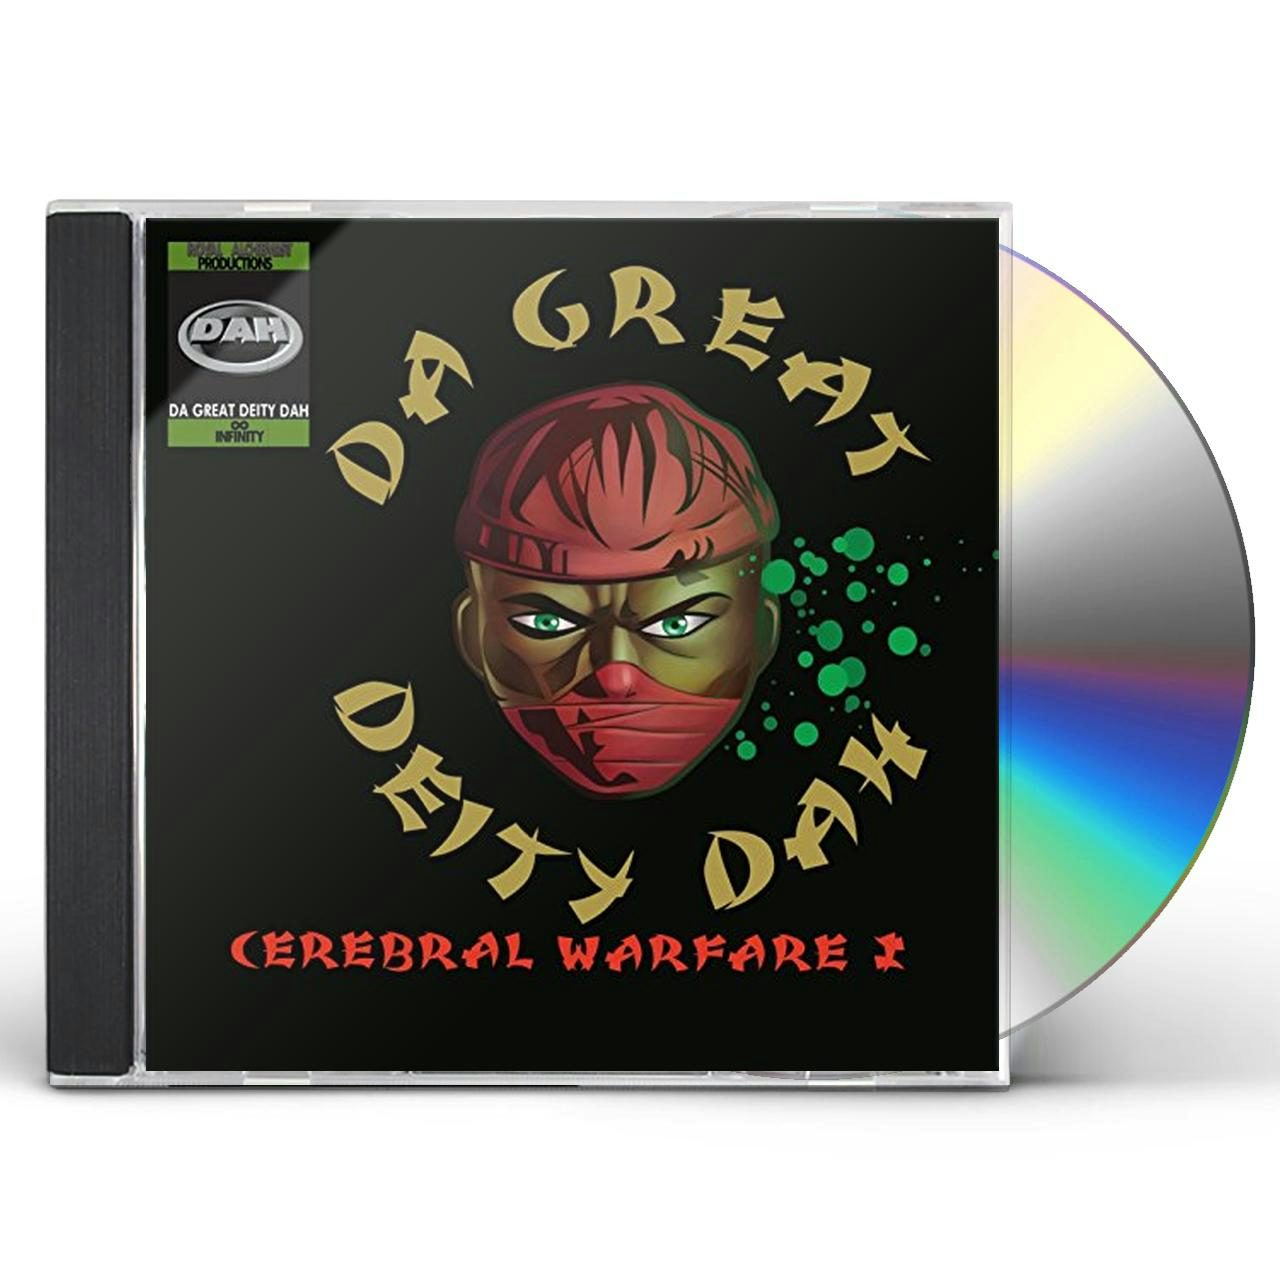 Da Great Deity Dah Store: Official Merch & Vinyl